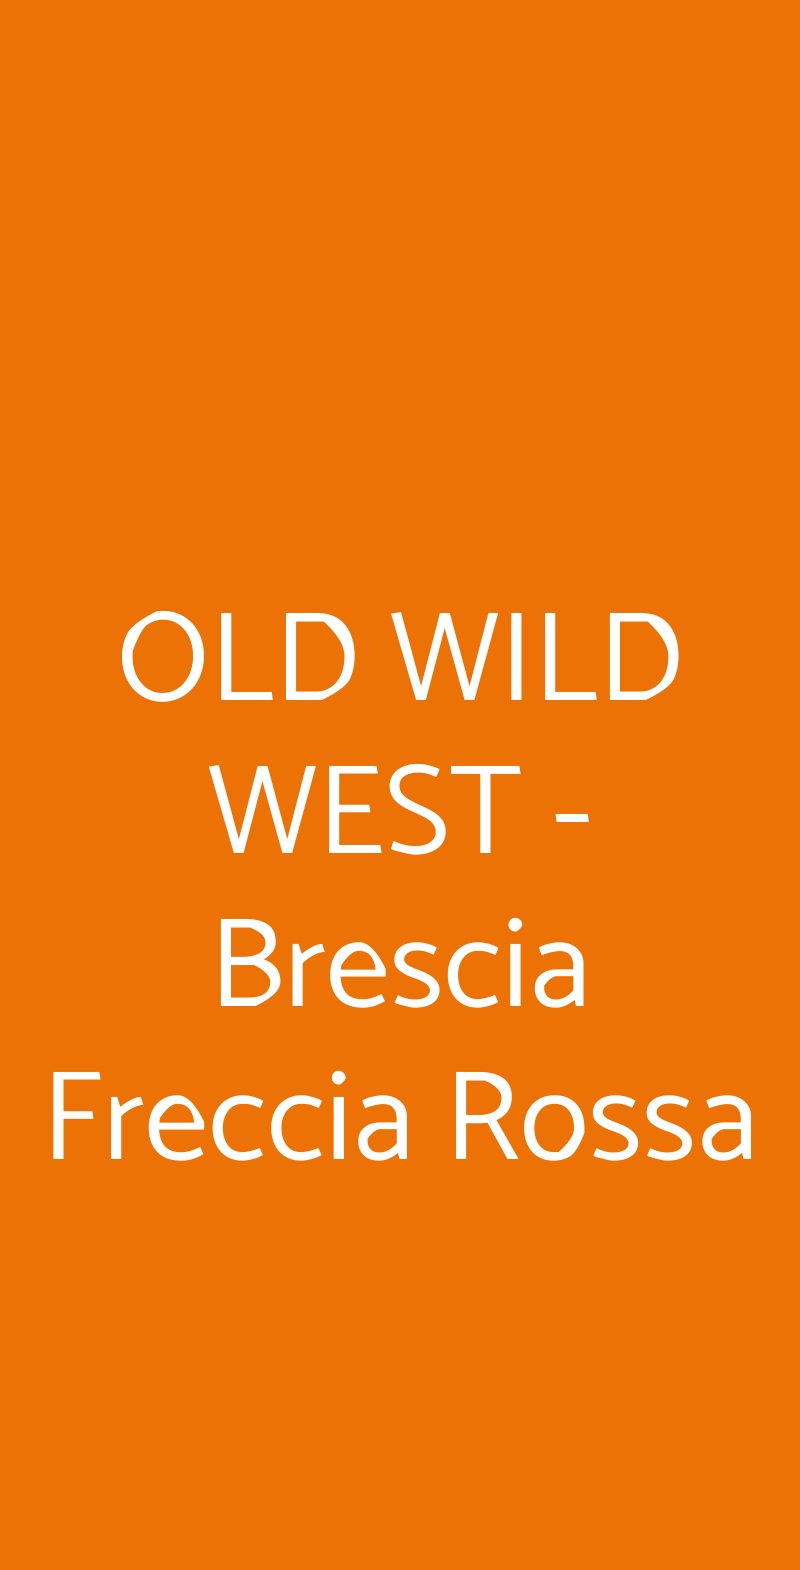 OLD WILD WEST - Brescia Freccia Rossa Brescia menù 1 pagina